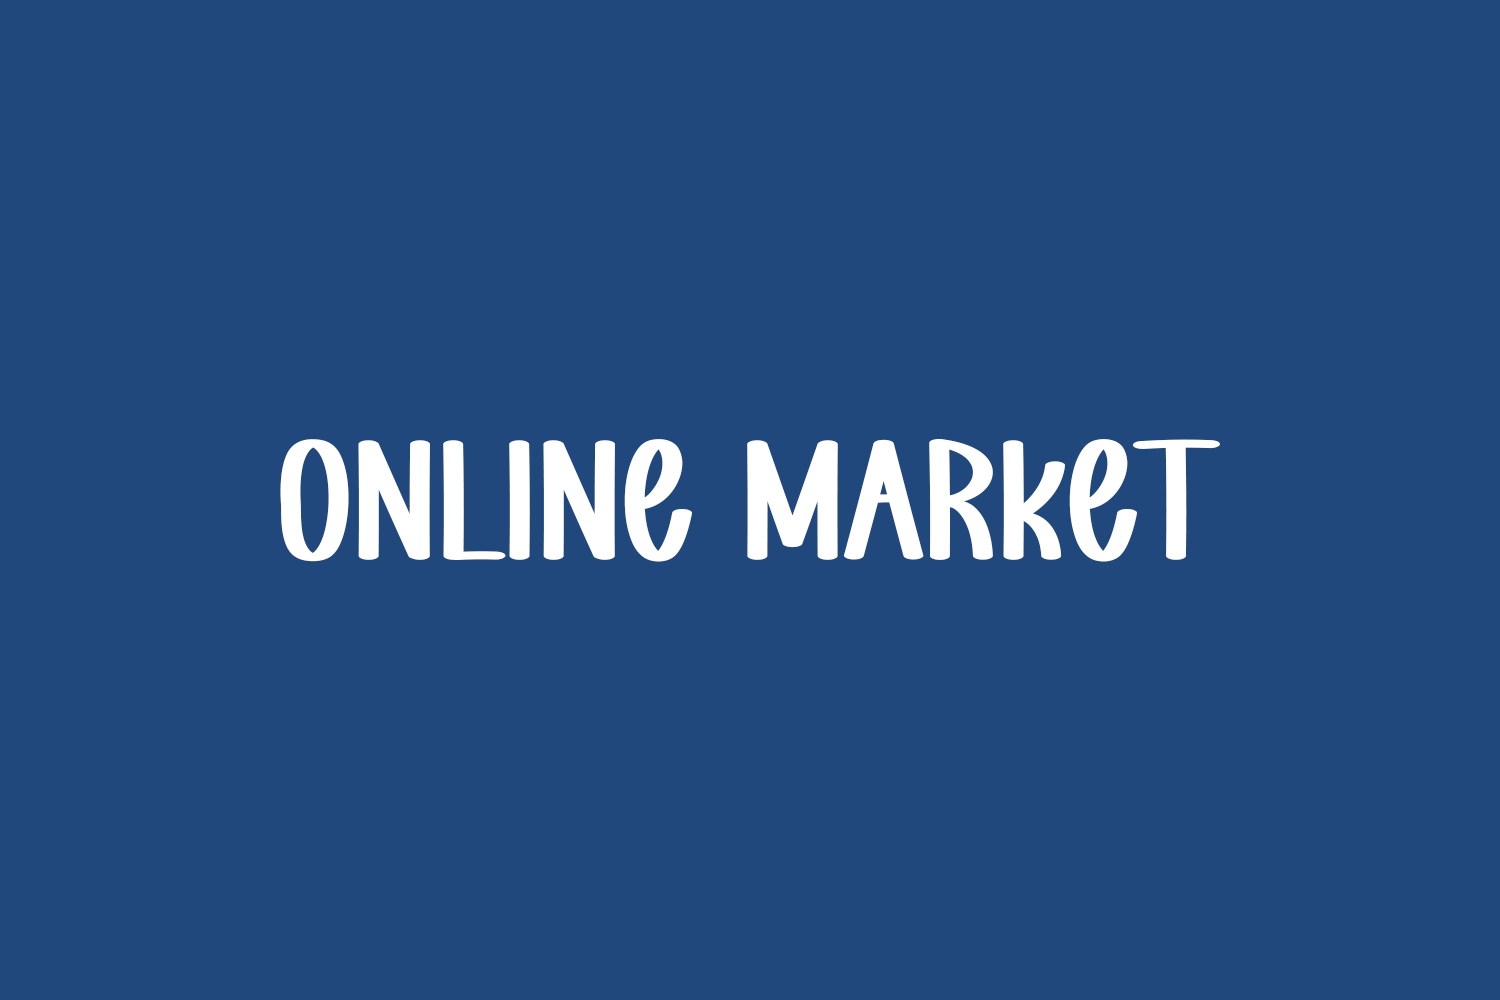 Free Online Market Font